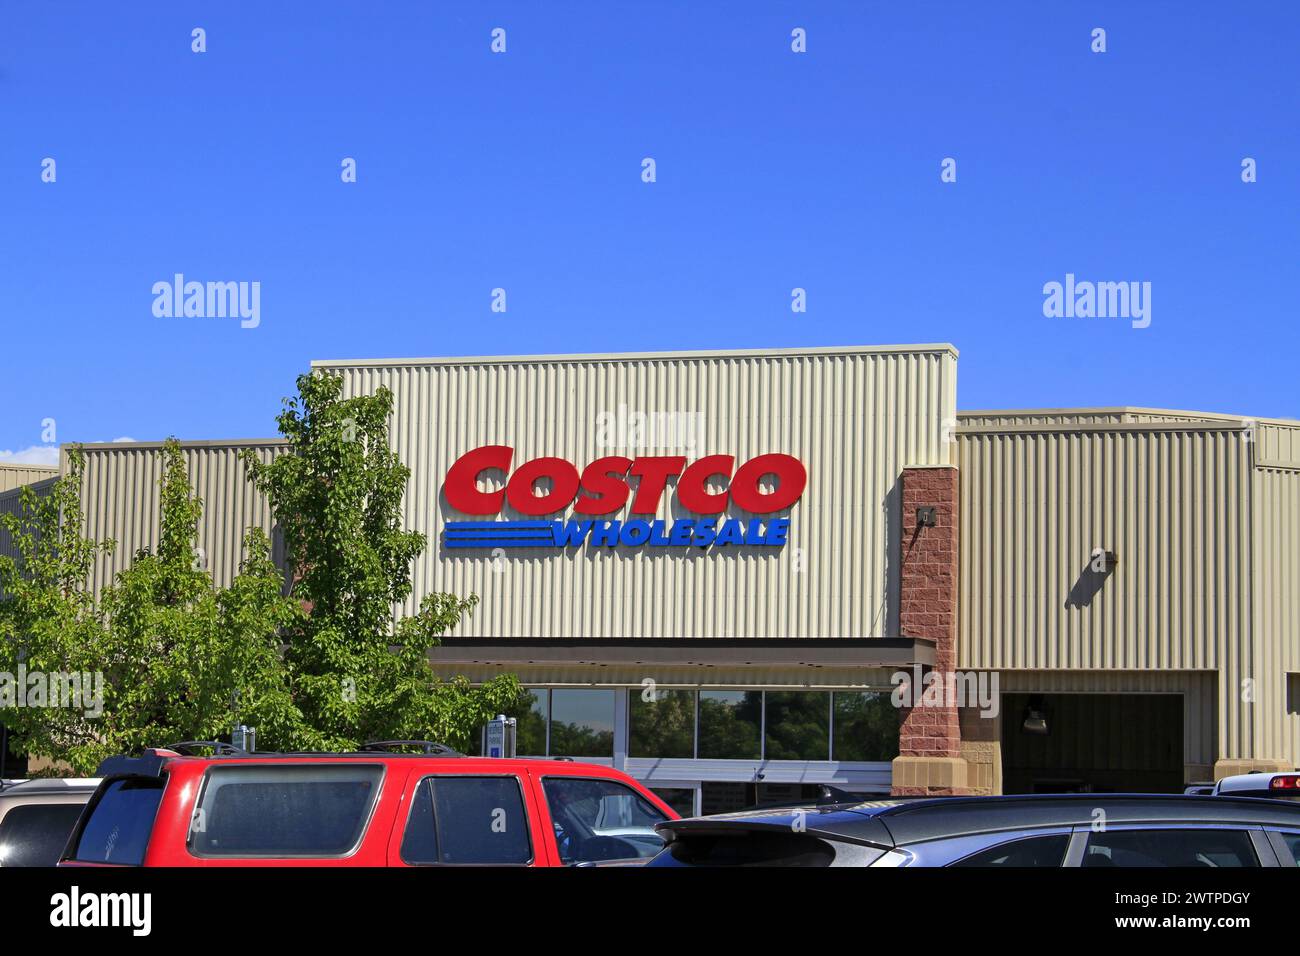 Façade du magasin COSTCO avec arbres et ciel bleu Banque D'Images